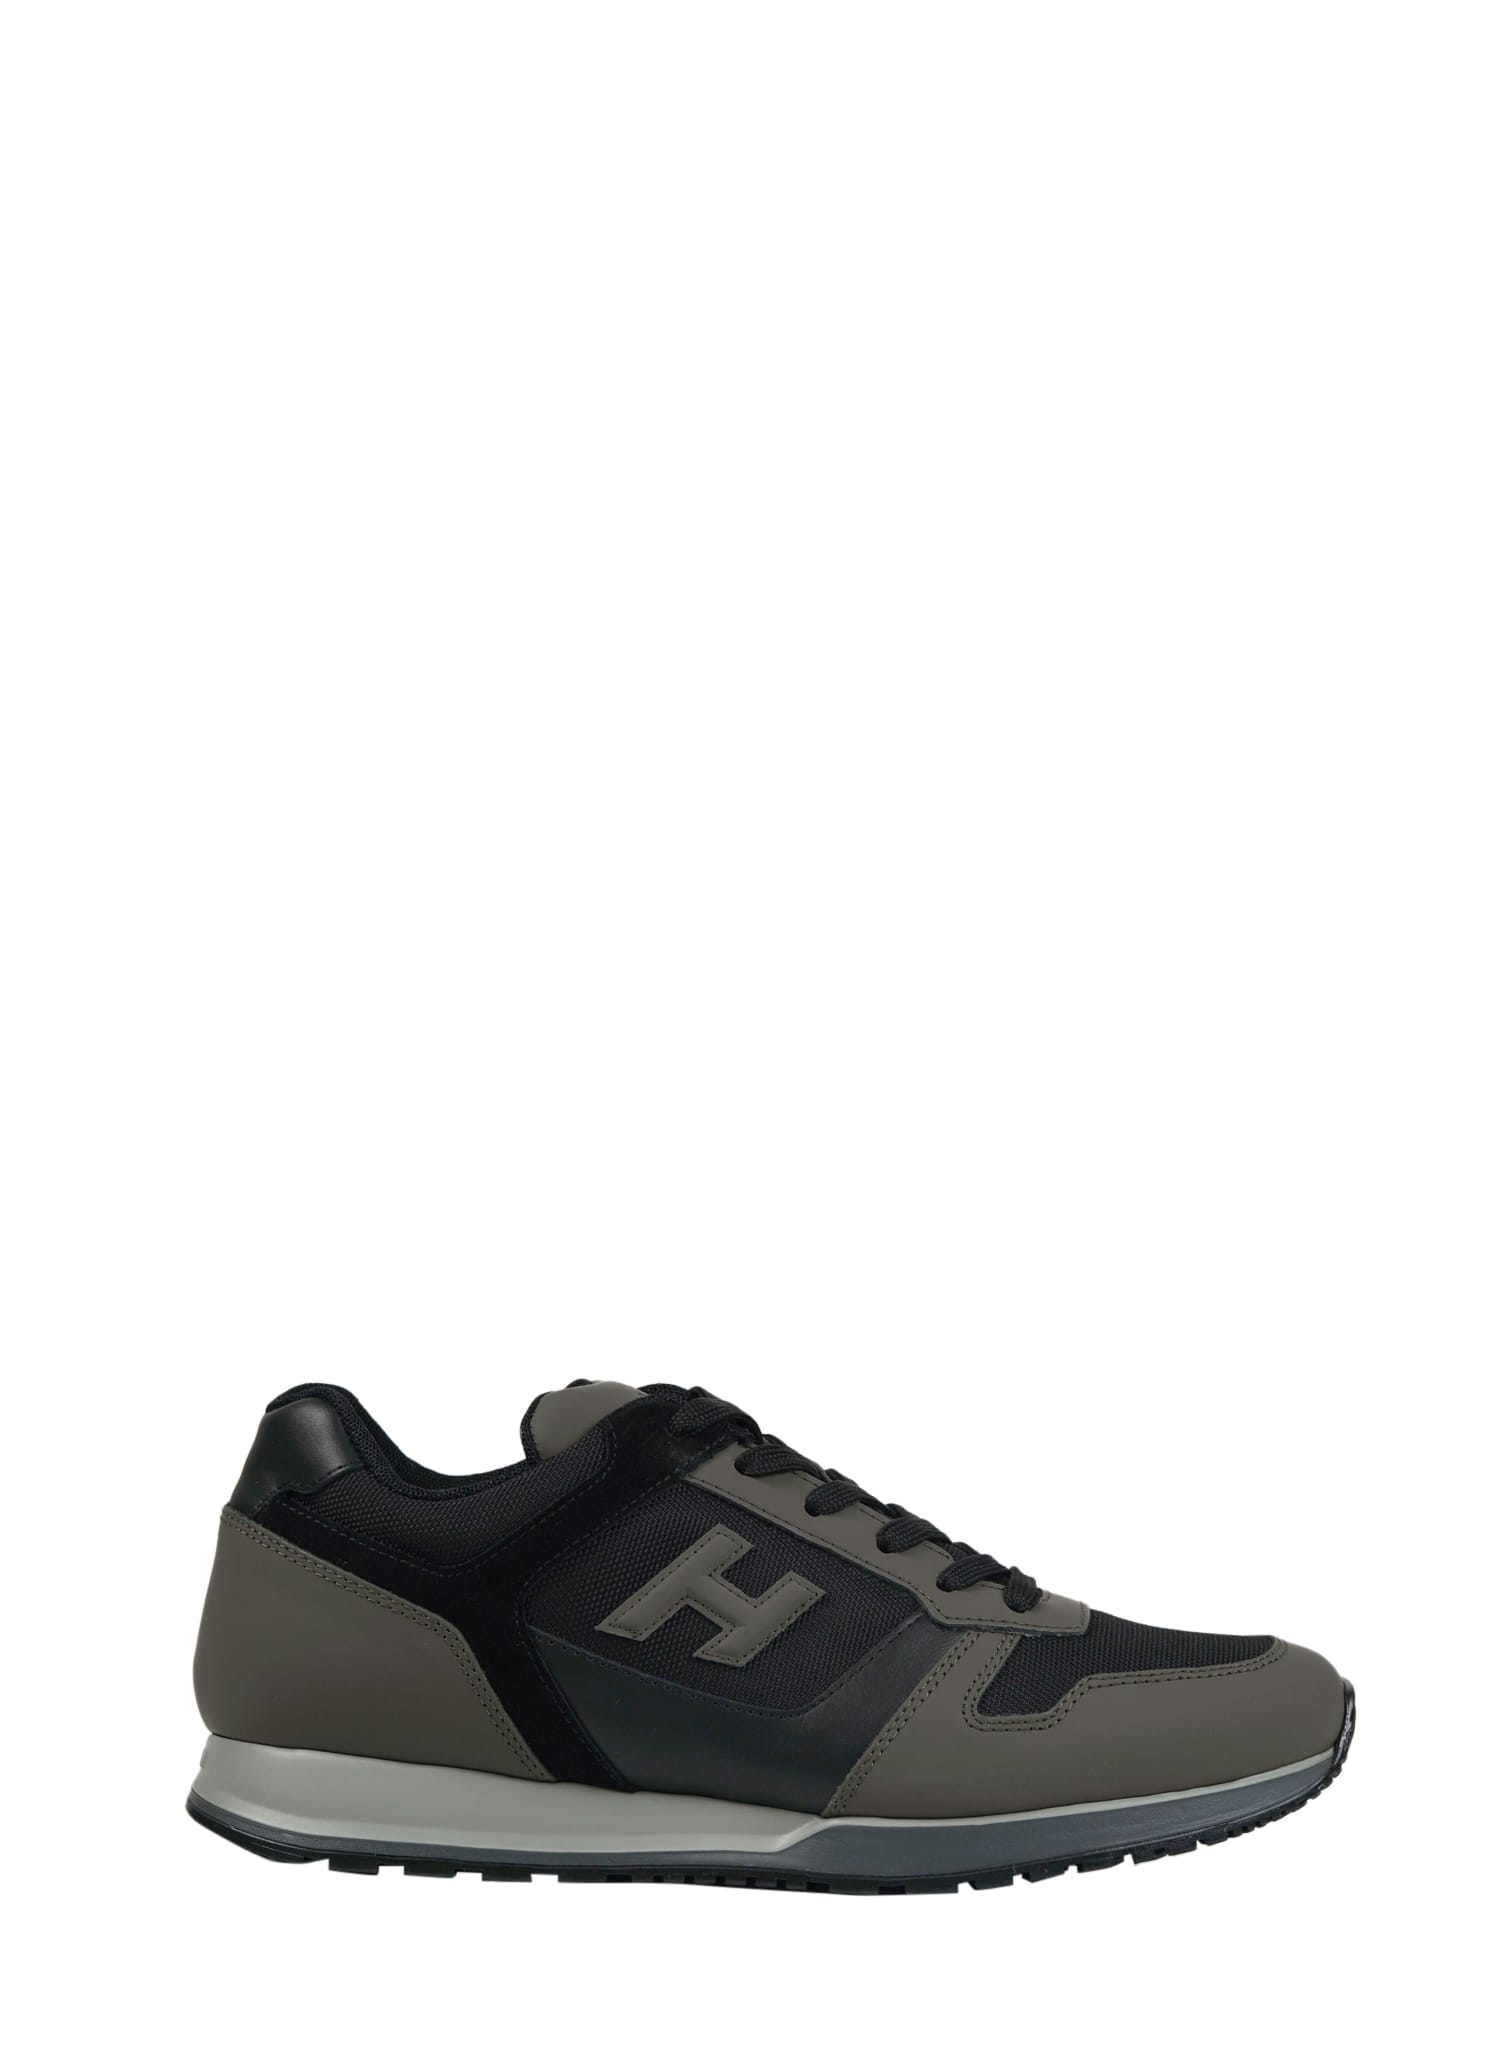 Hogan H321 Allacciato 3d Sneaker